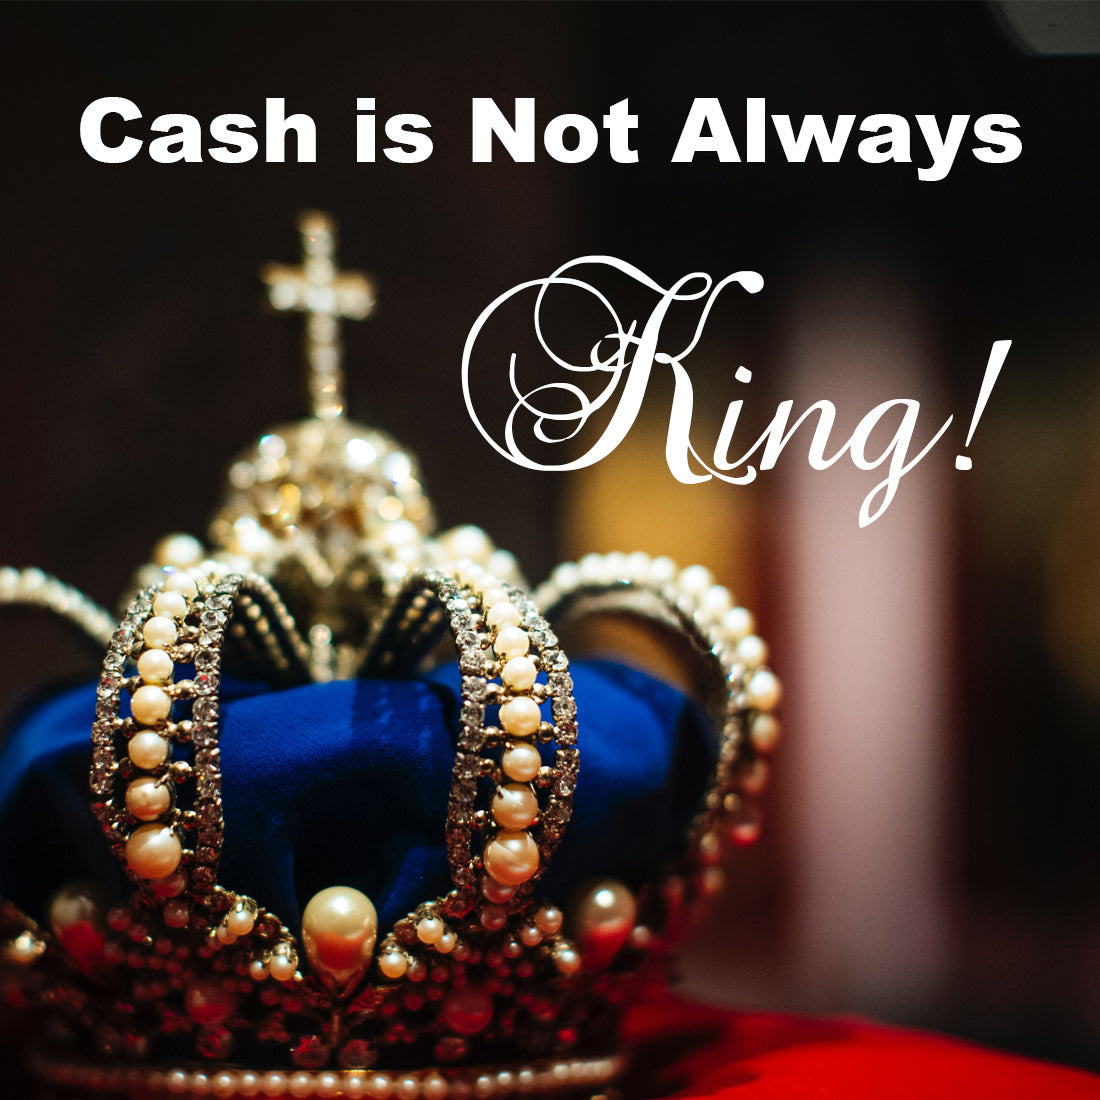 CASH IS NOT ALWAYS KING!